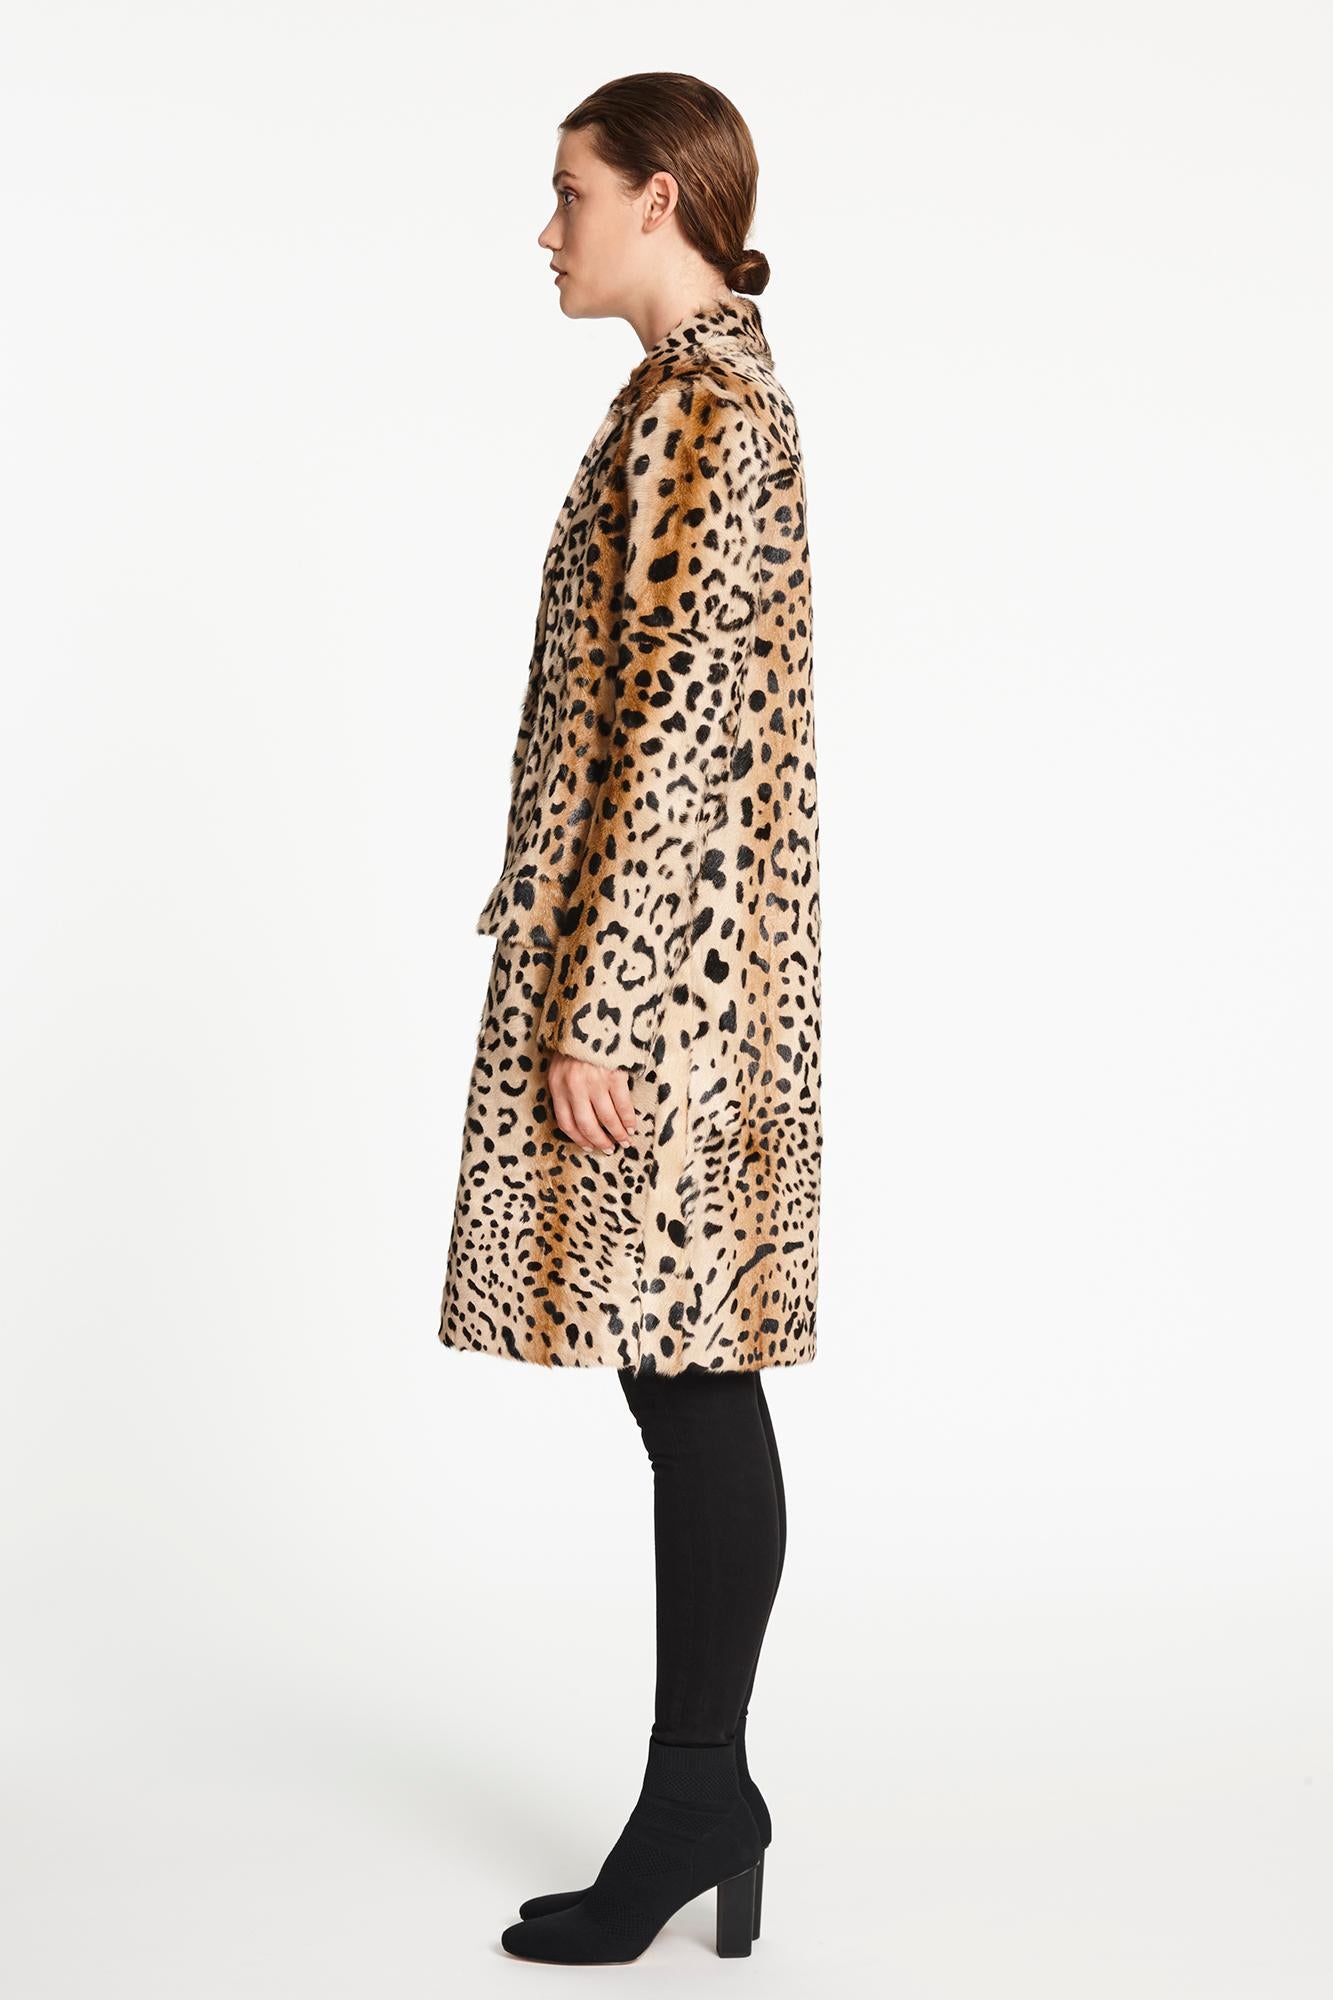 Verheyen London Leopard Print Coat in Natural Goat Hair Fur UK 10 - Brand New  2